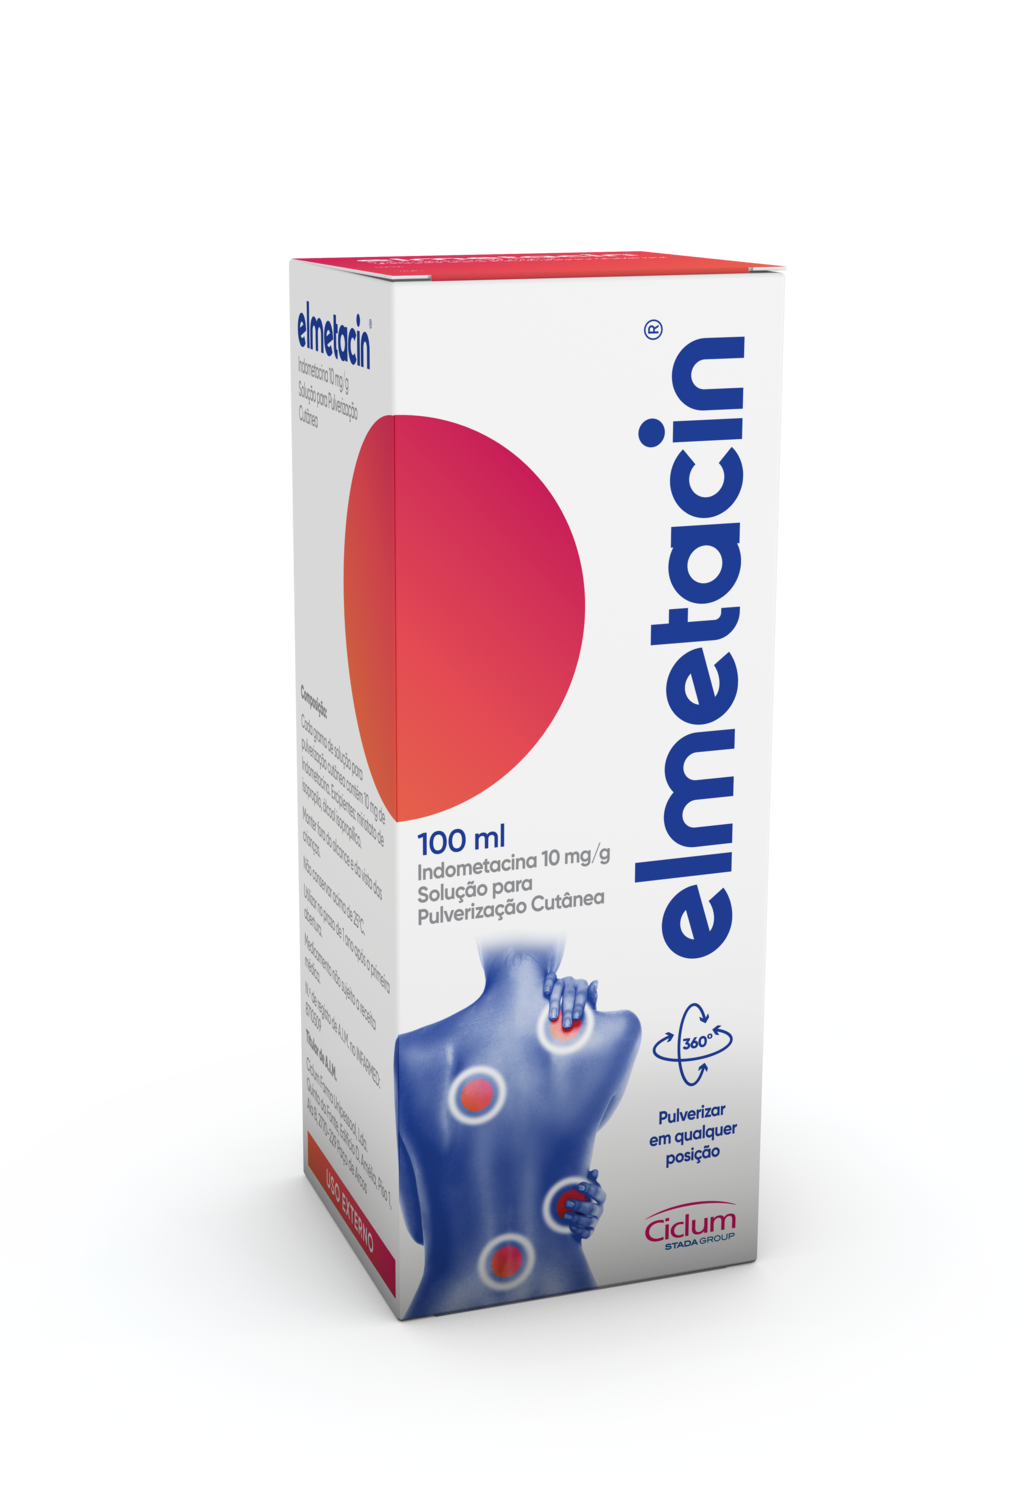 box elmetacin high 1